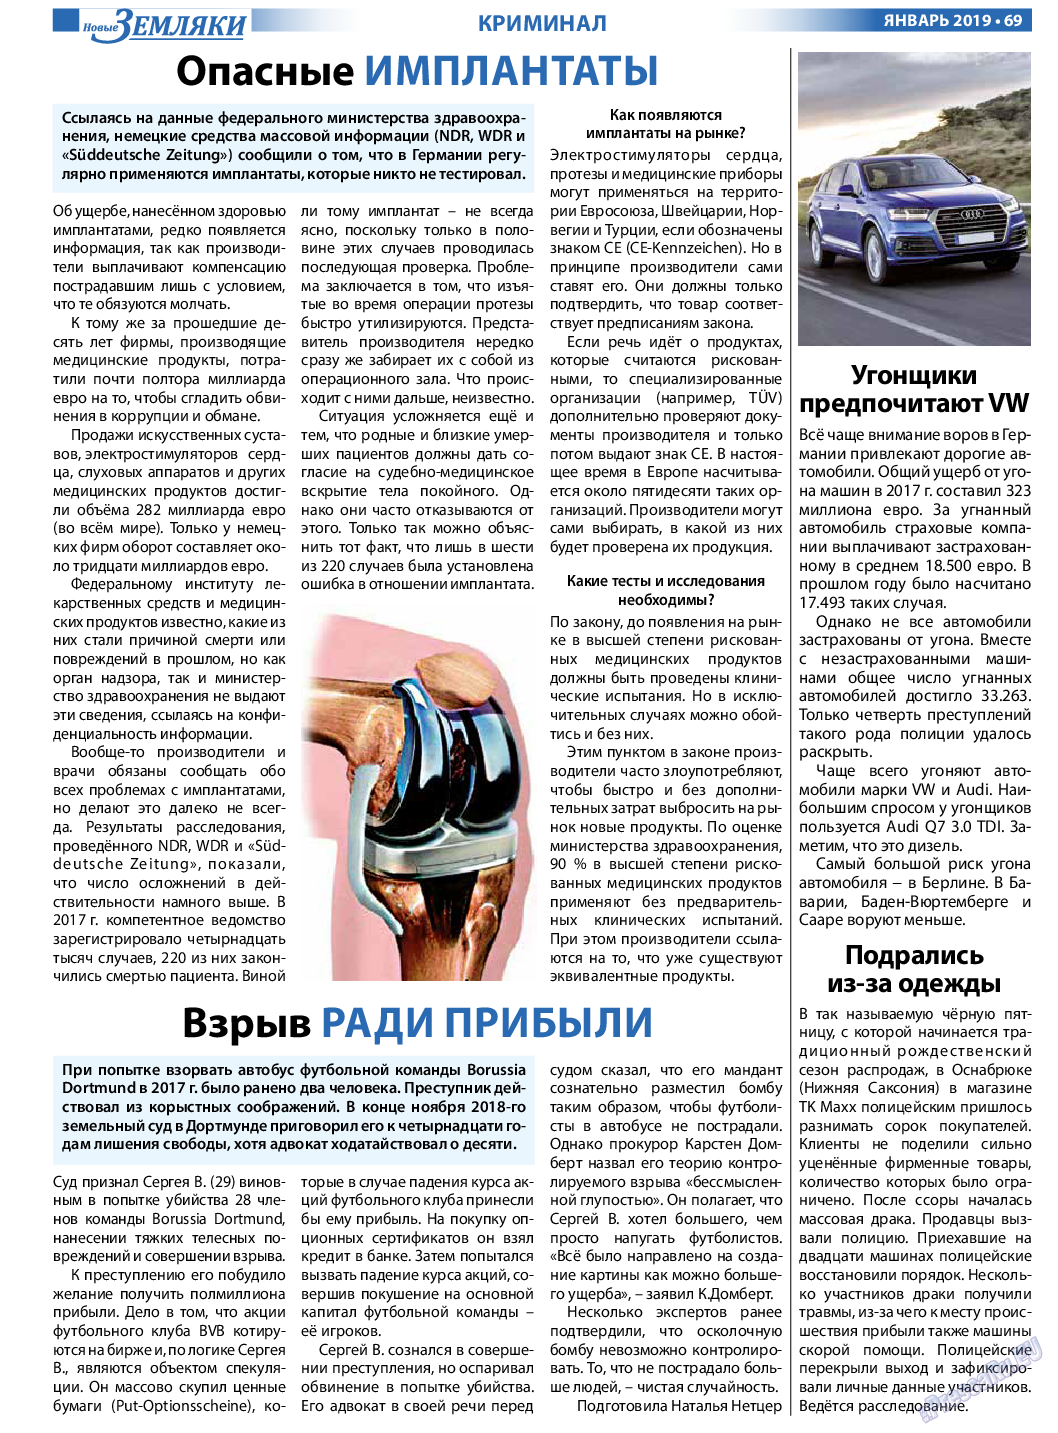 Новые Земляки (газета). 2019 год, номер 1, стр. 69